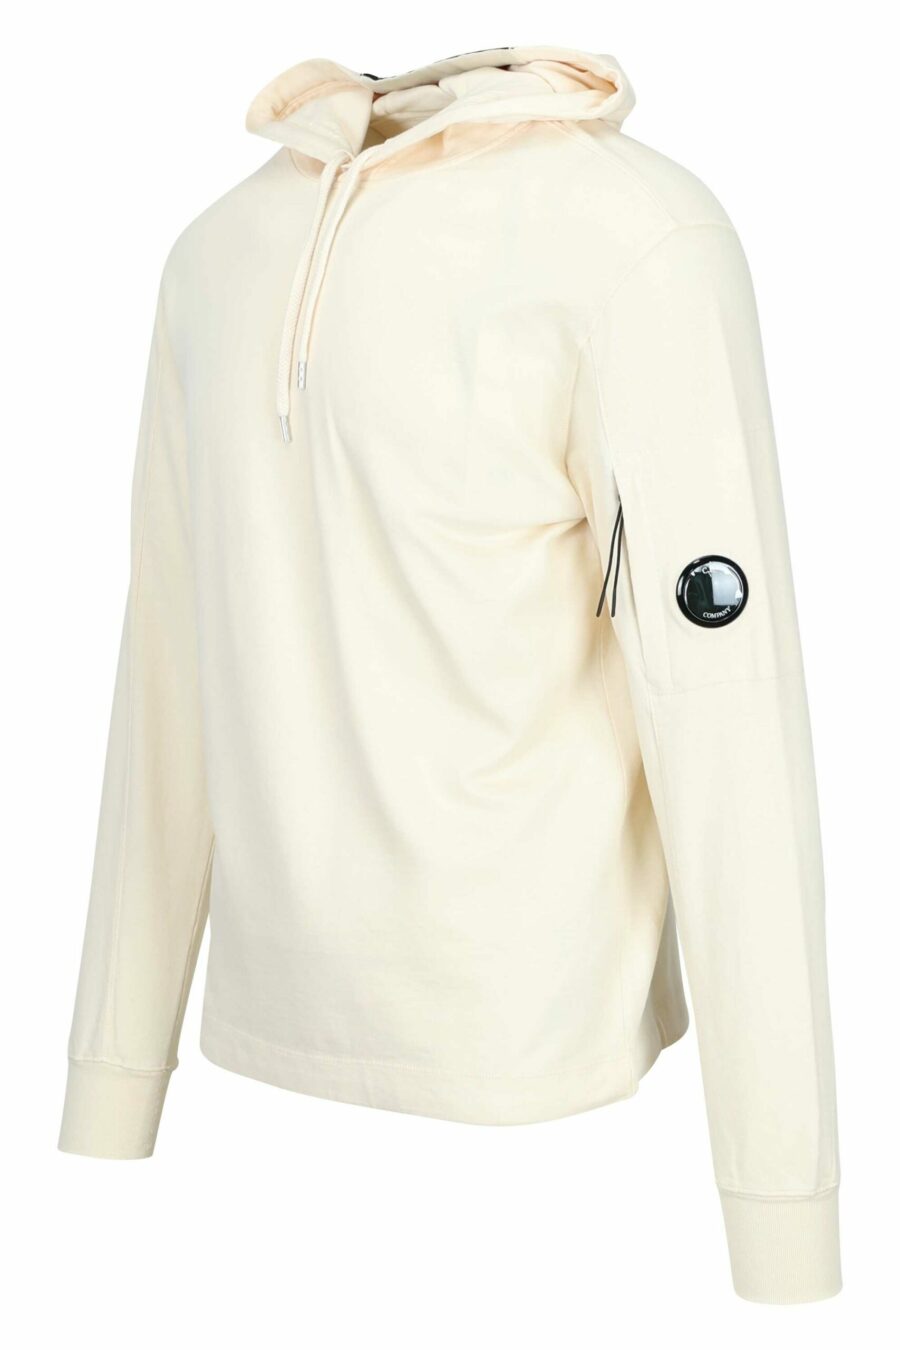 Sweat à capuche beige avec pochette pour lentille mini-logo - 7620943745757 1 à l'échelle